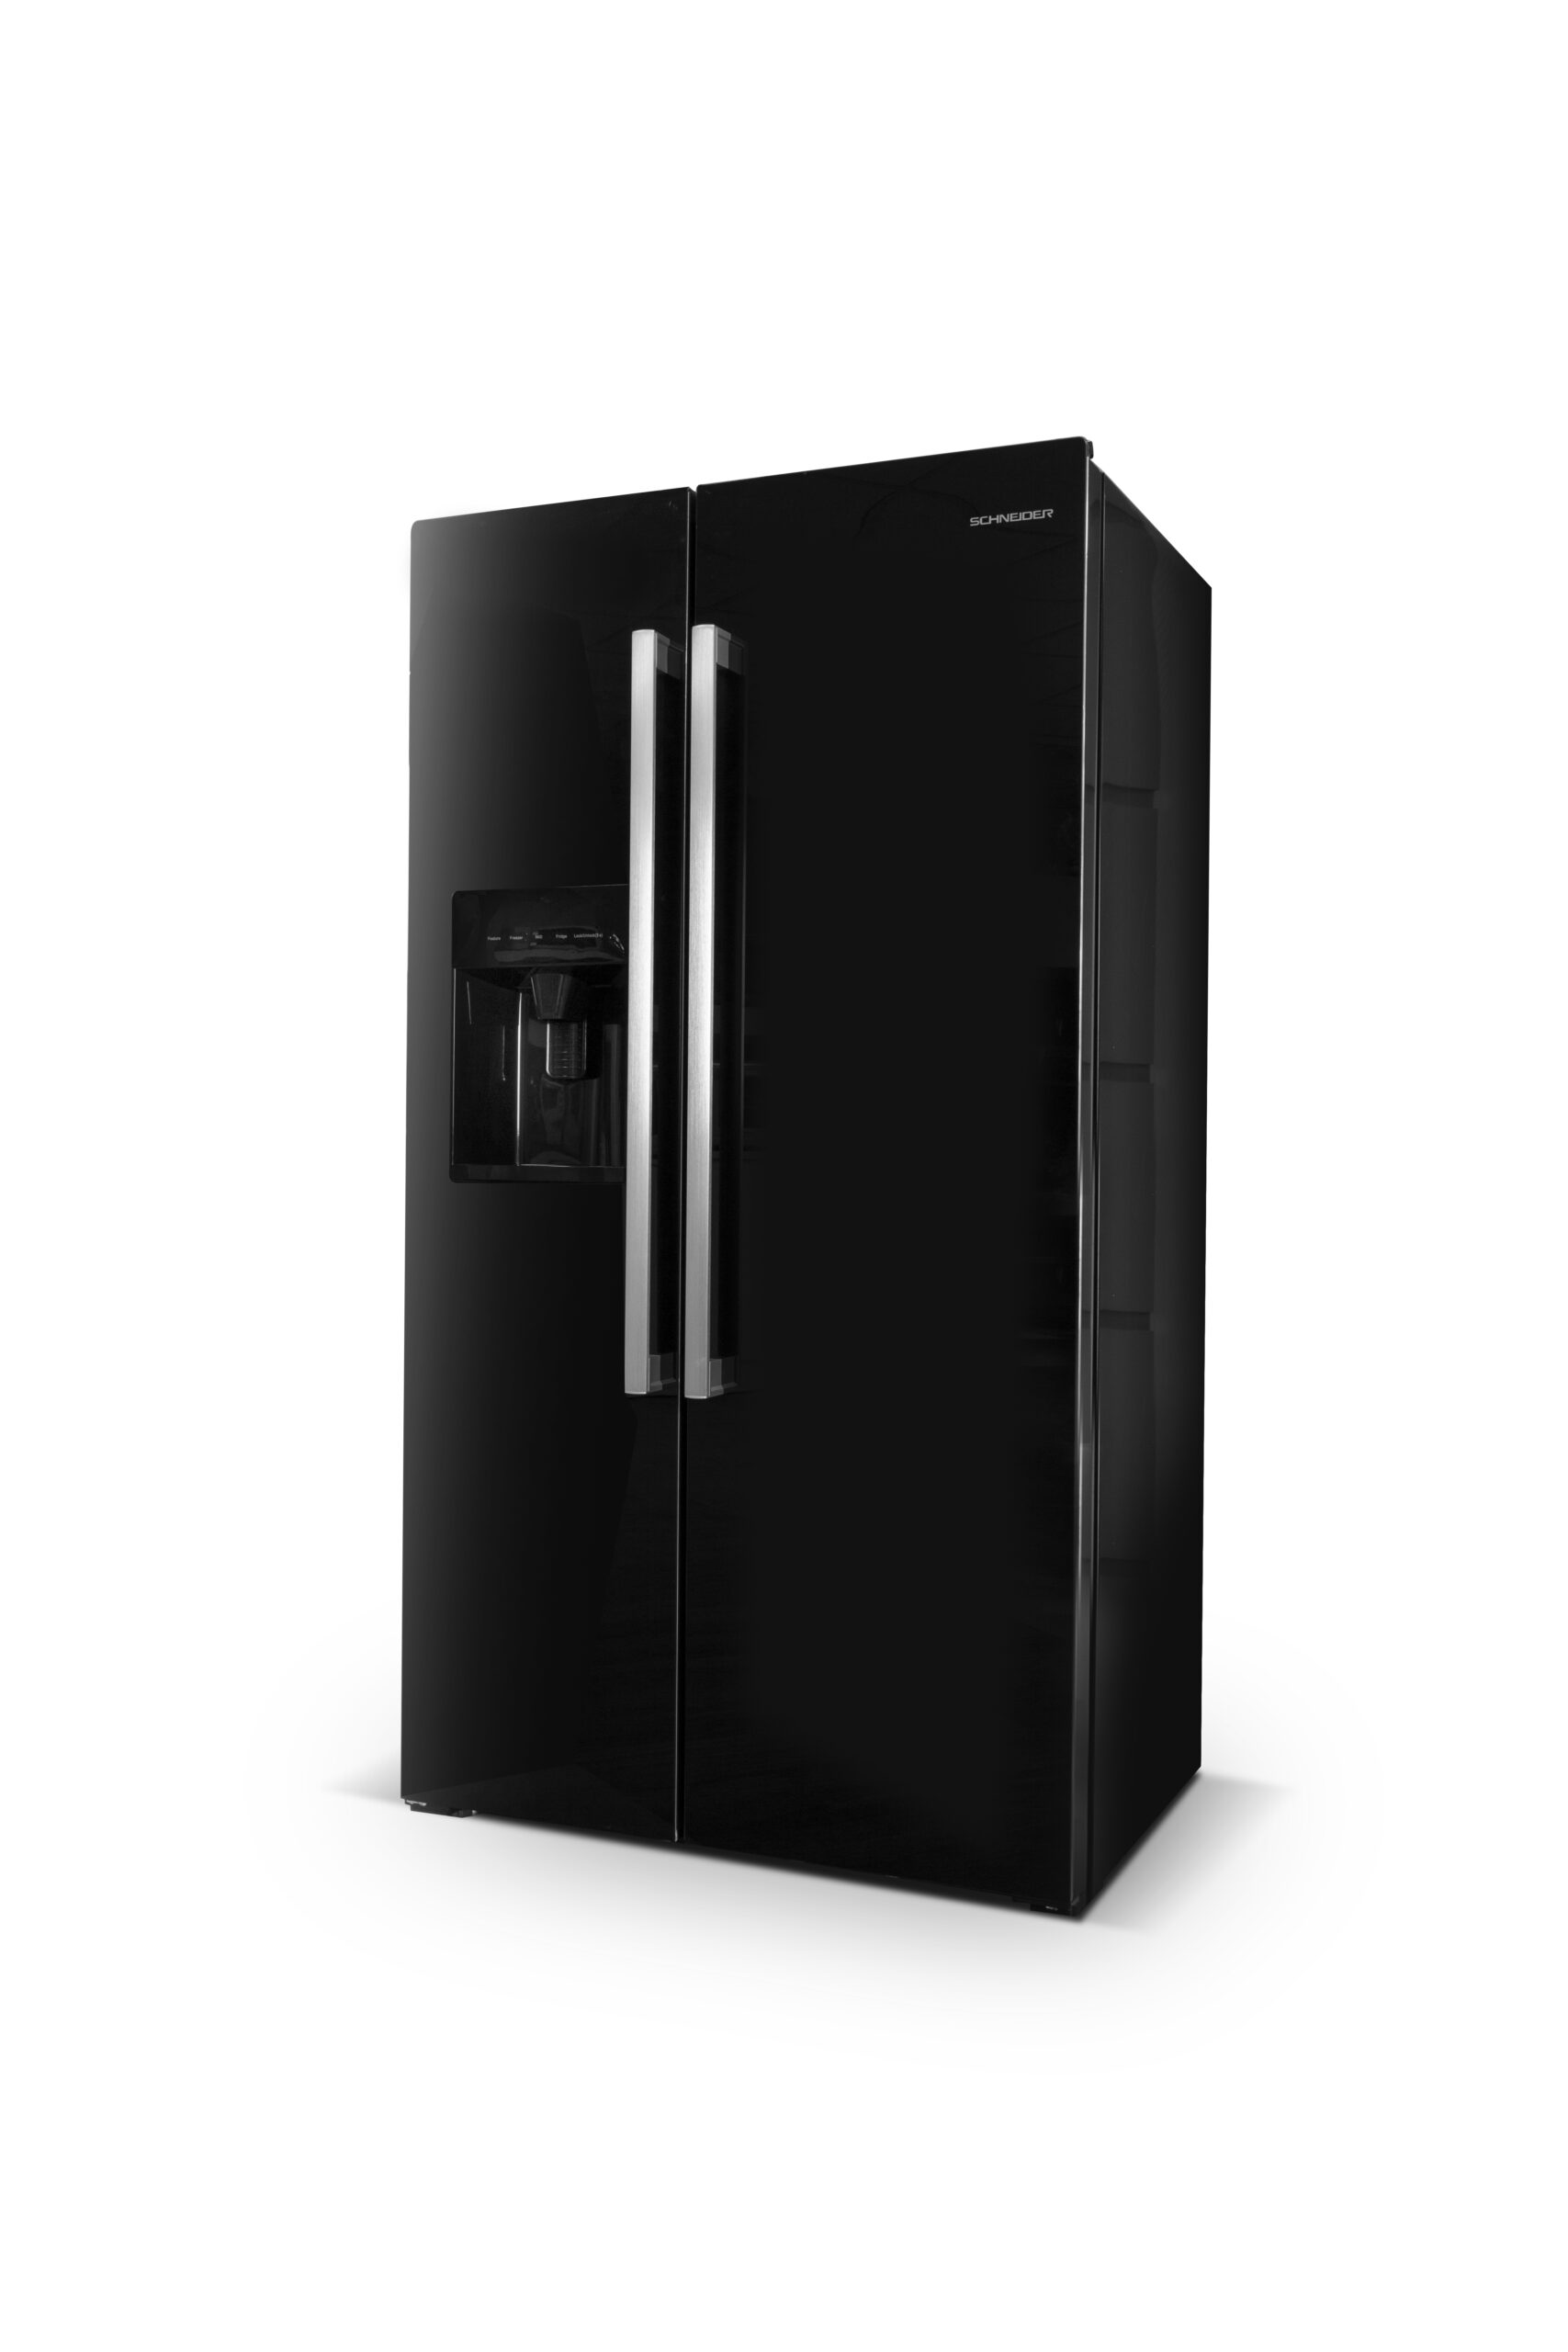 Réfrigérateur Très Grande Largeur - Frigos XXL